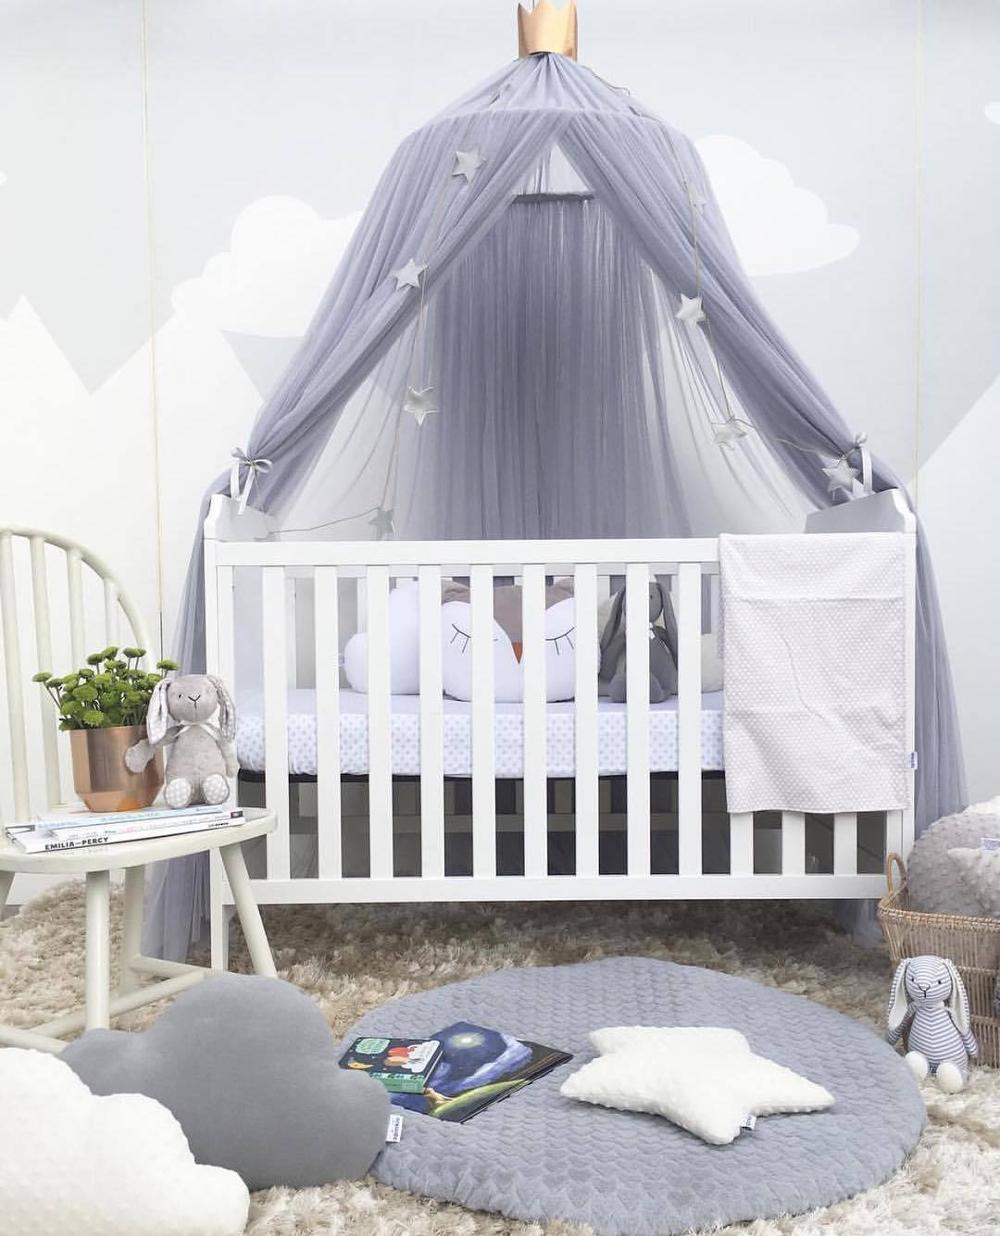 Baby prinsesse blonder krybbe netting barn myggenet baldakin telt multifunktion gardin rundt kuppeltelt sengetøj til spædbarn pige dreng: Grå